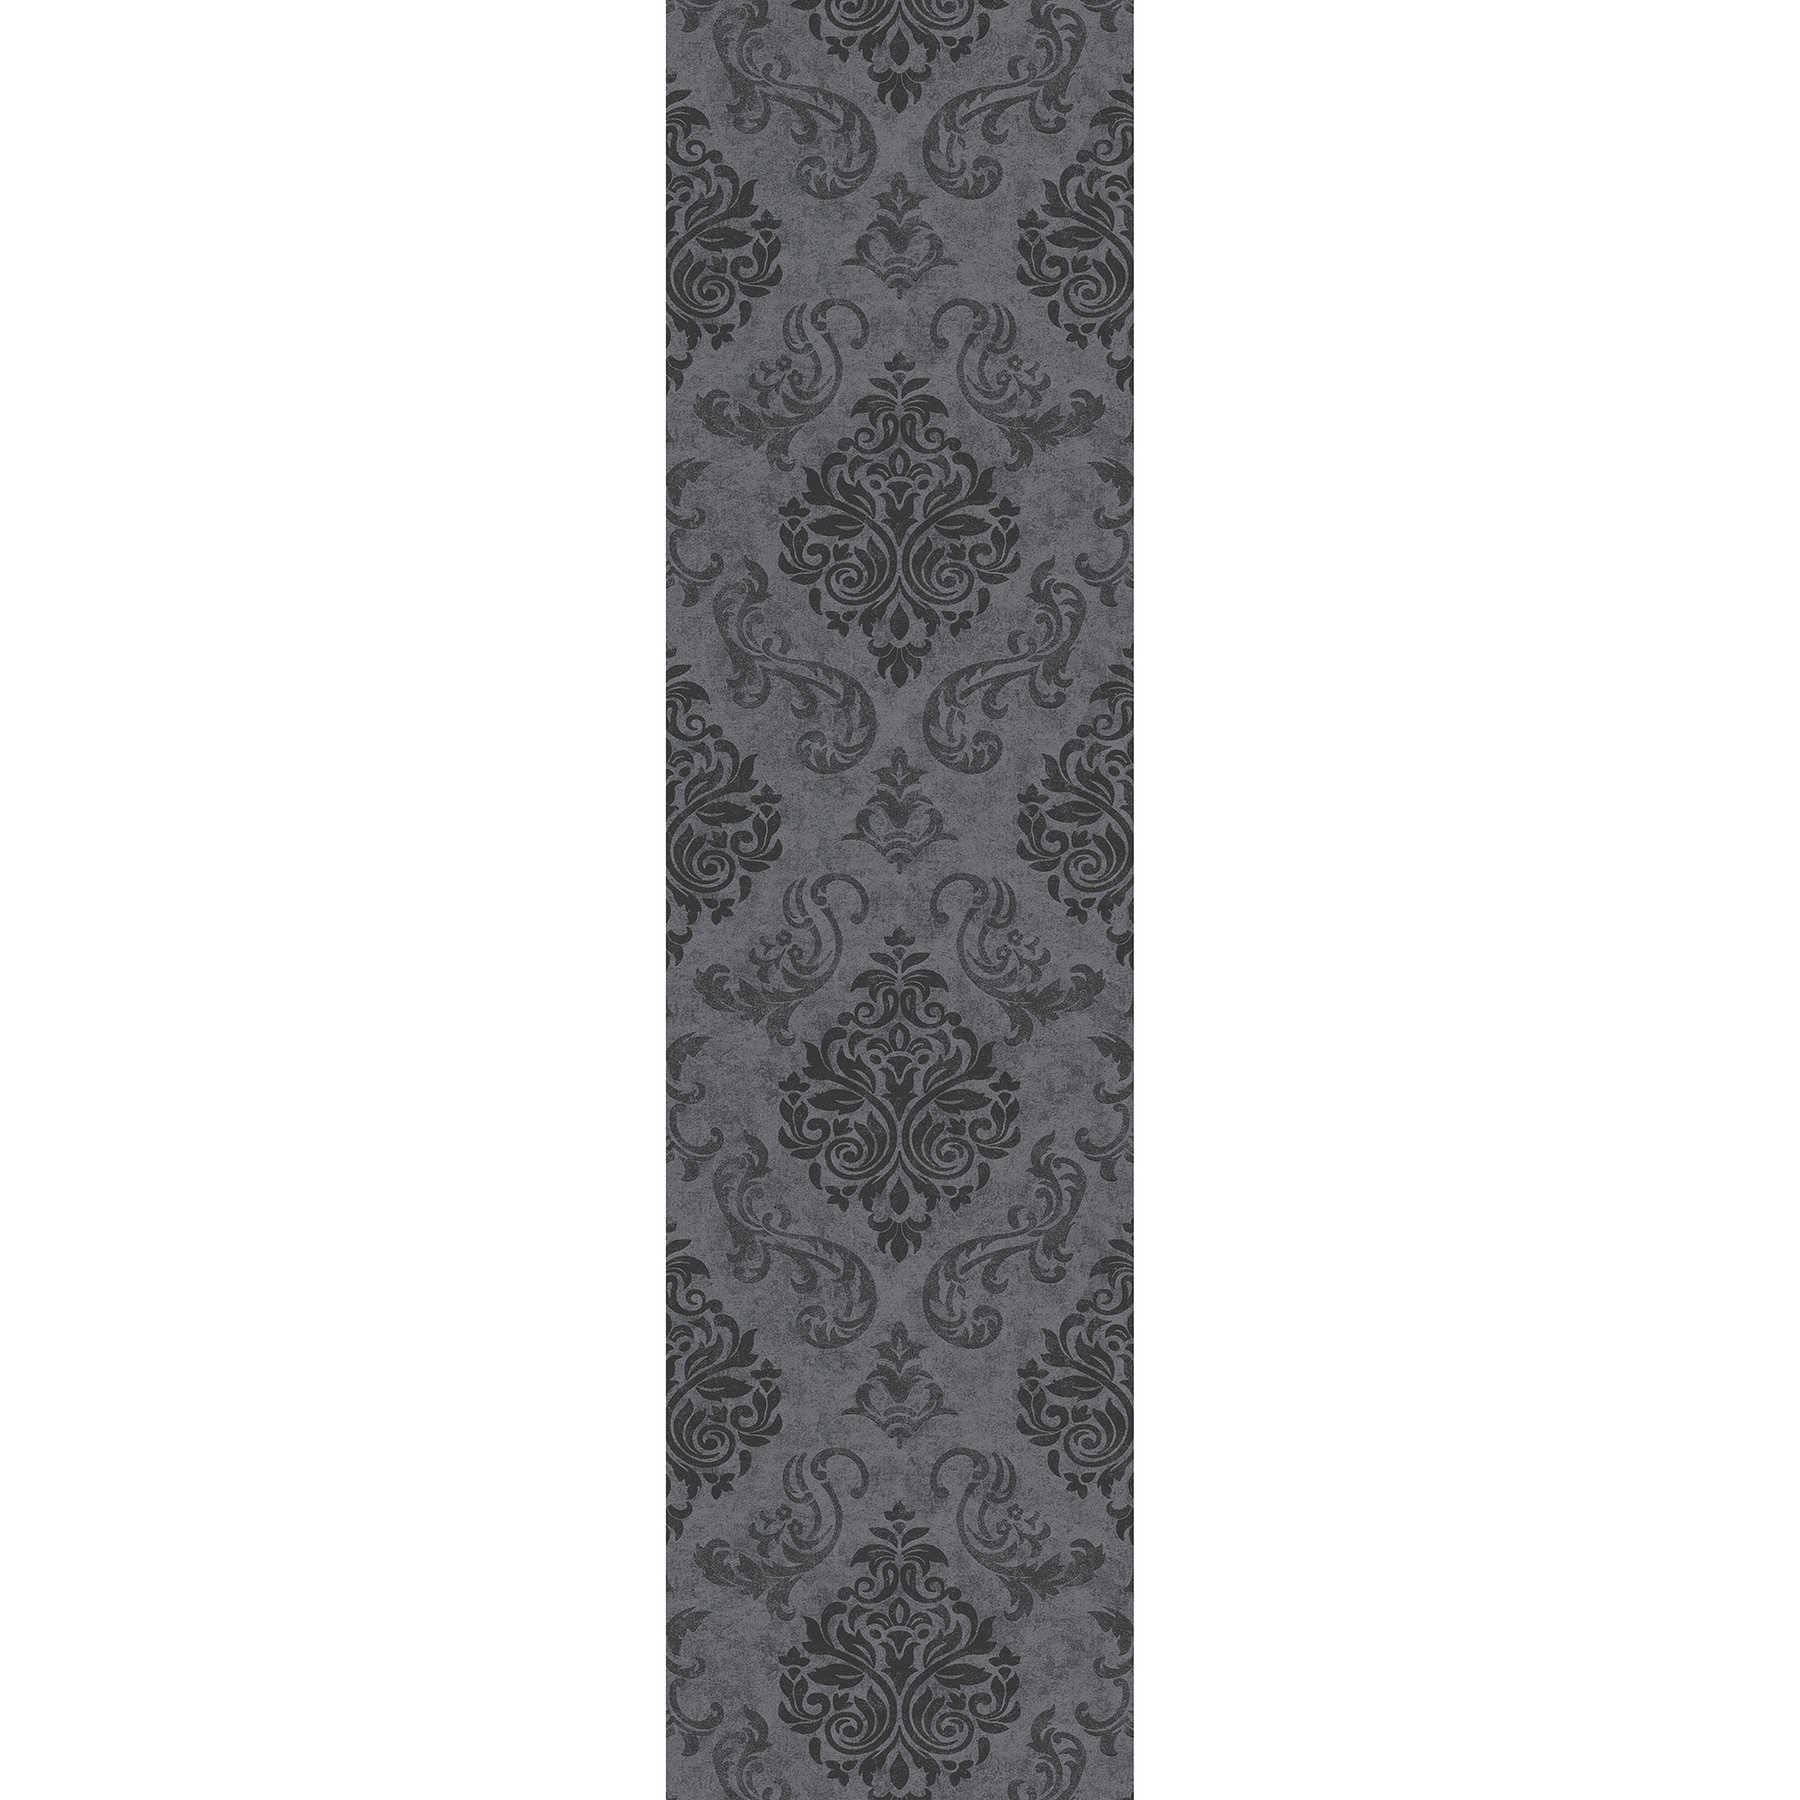 Barok ornament behang met structuur patroon in used look - zwart
